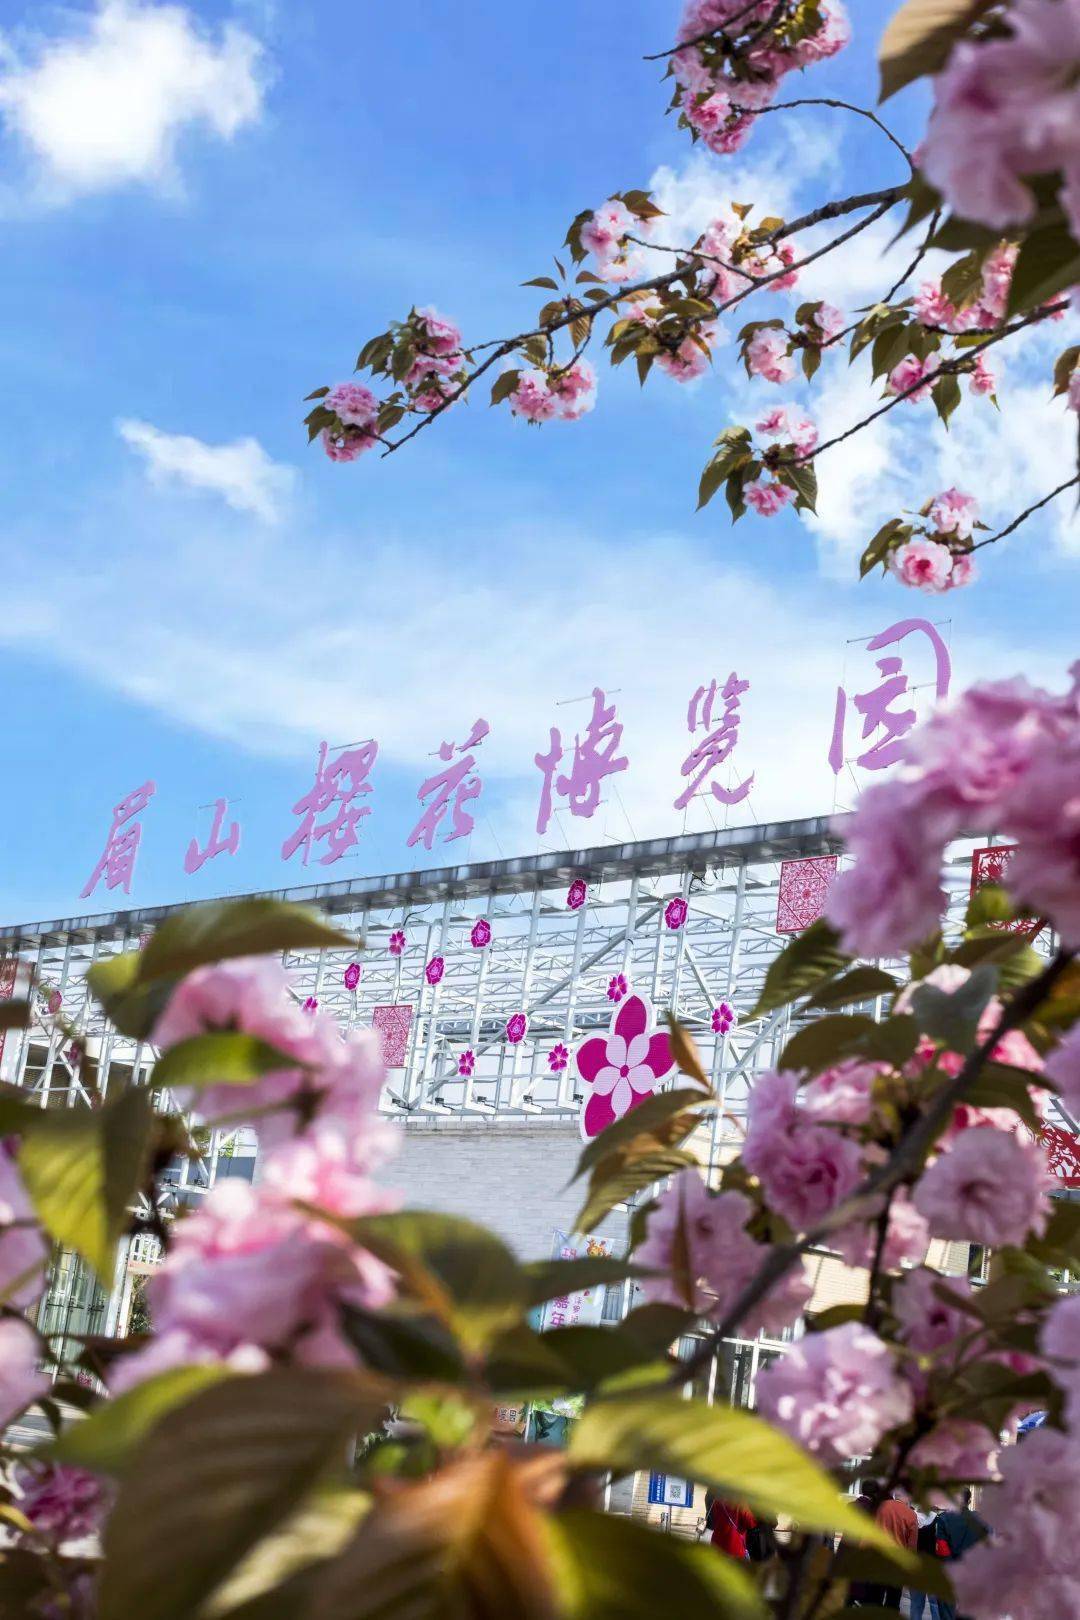 阳光关山,松月等樱花20多种园区内种植了染井吉野,中国红眉山樱花博览